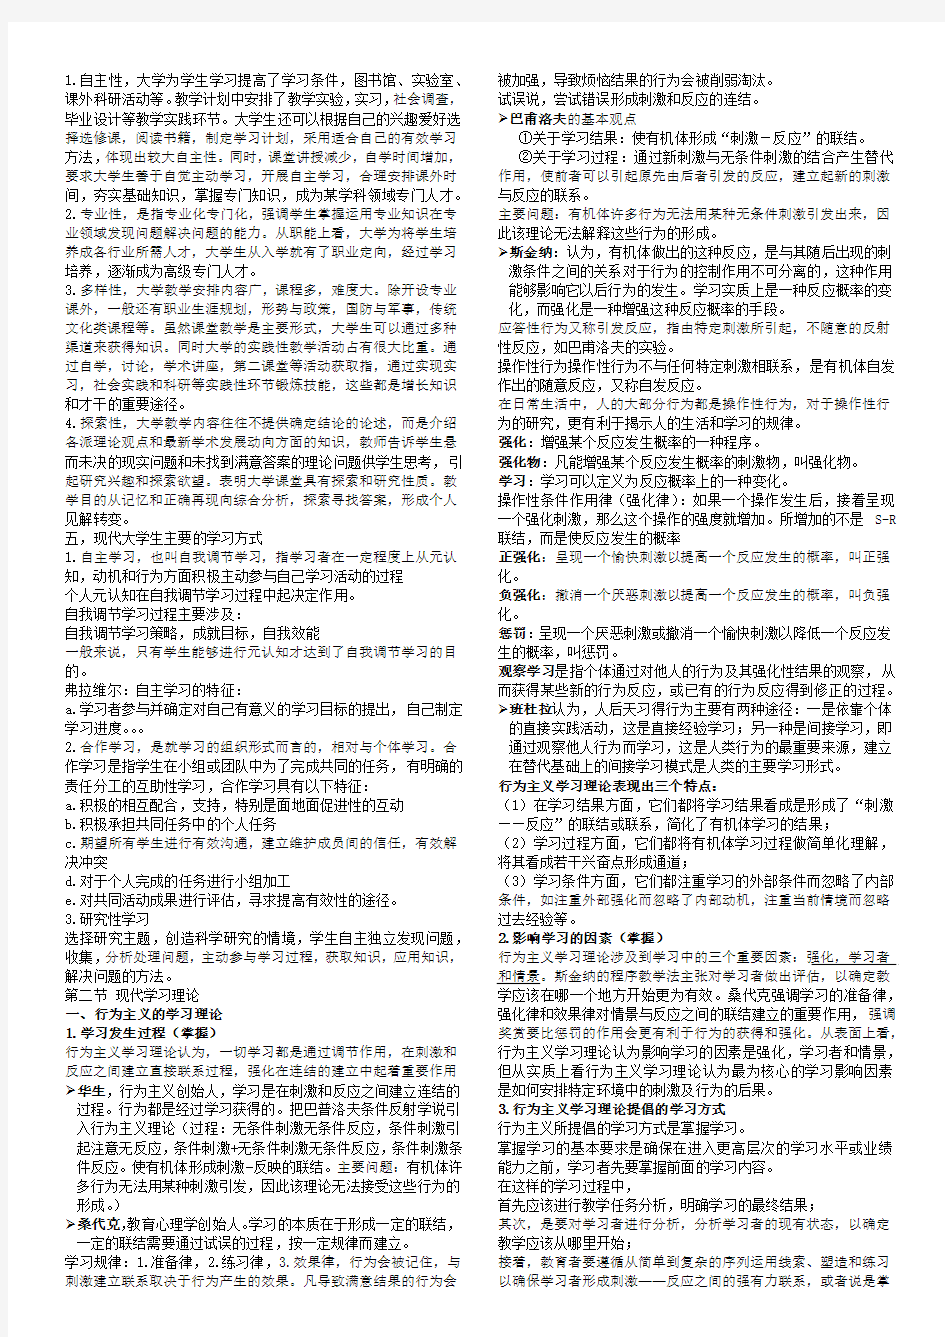 2016年河北省高校教师资格证考试知识点总结-心理学(第4-5章)对应2015年最新教材和大纲